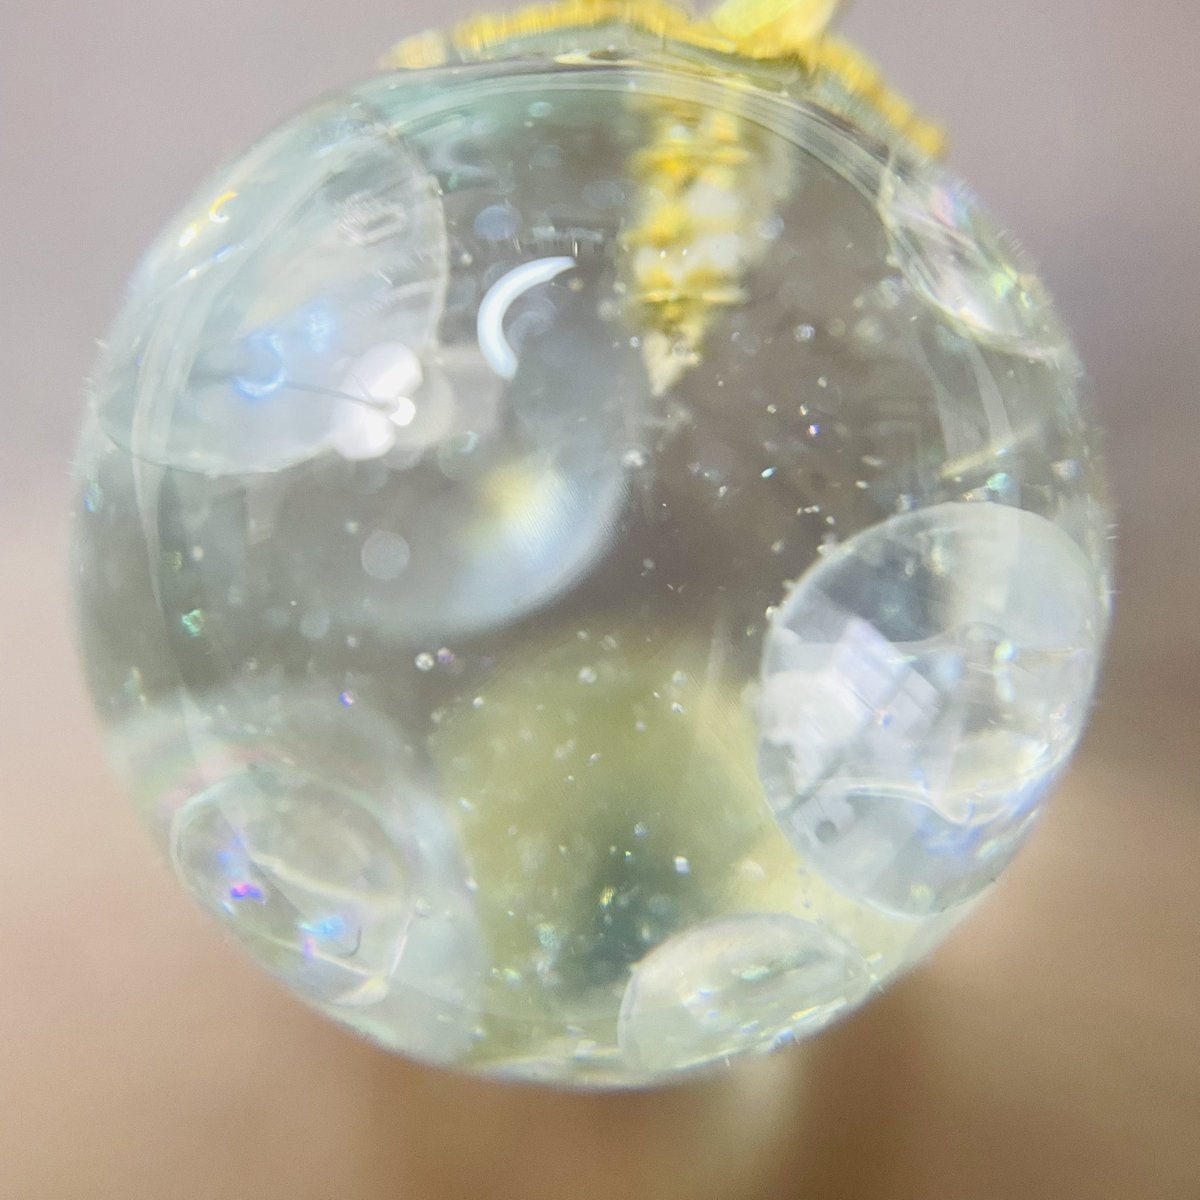 球体レジン🫧

透明ビーズで泡泡の水の中をイメージしました♪
とっても綺麗で涼しげな球体です✨

#ハンドメイド #ハンドメイドピアス #ハンドメイド作品 #レジン #レジン作品 #レジンピアス #空玉レジン #球体レジン